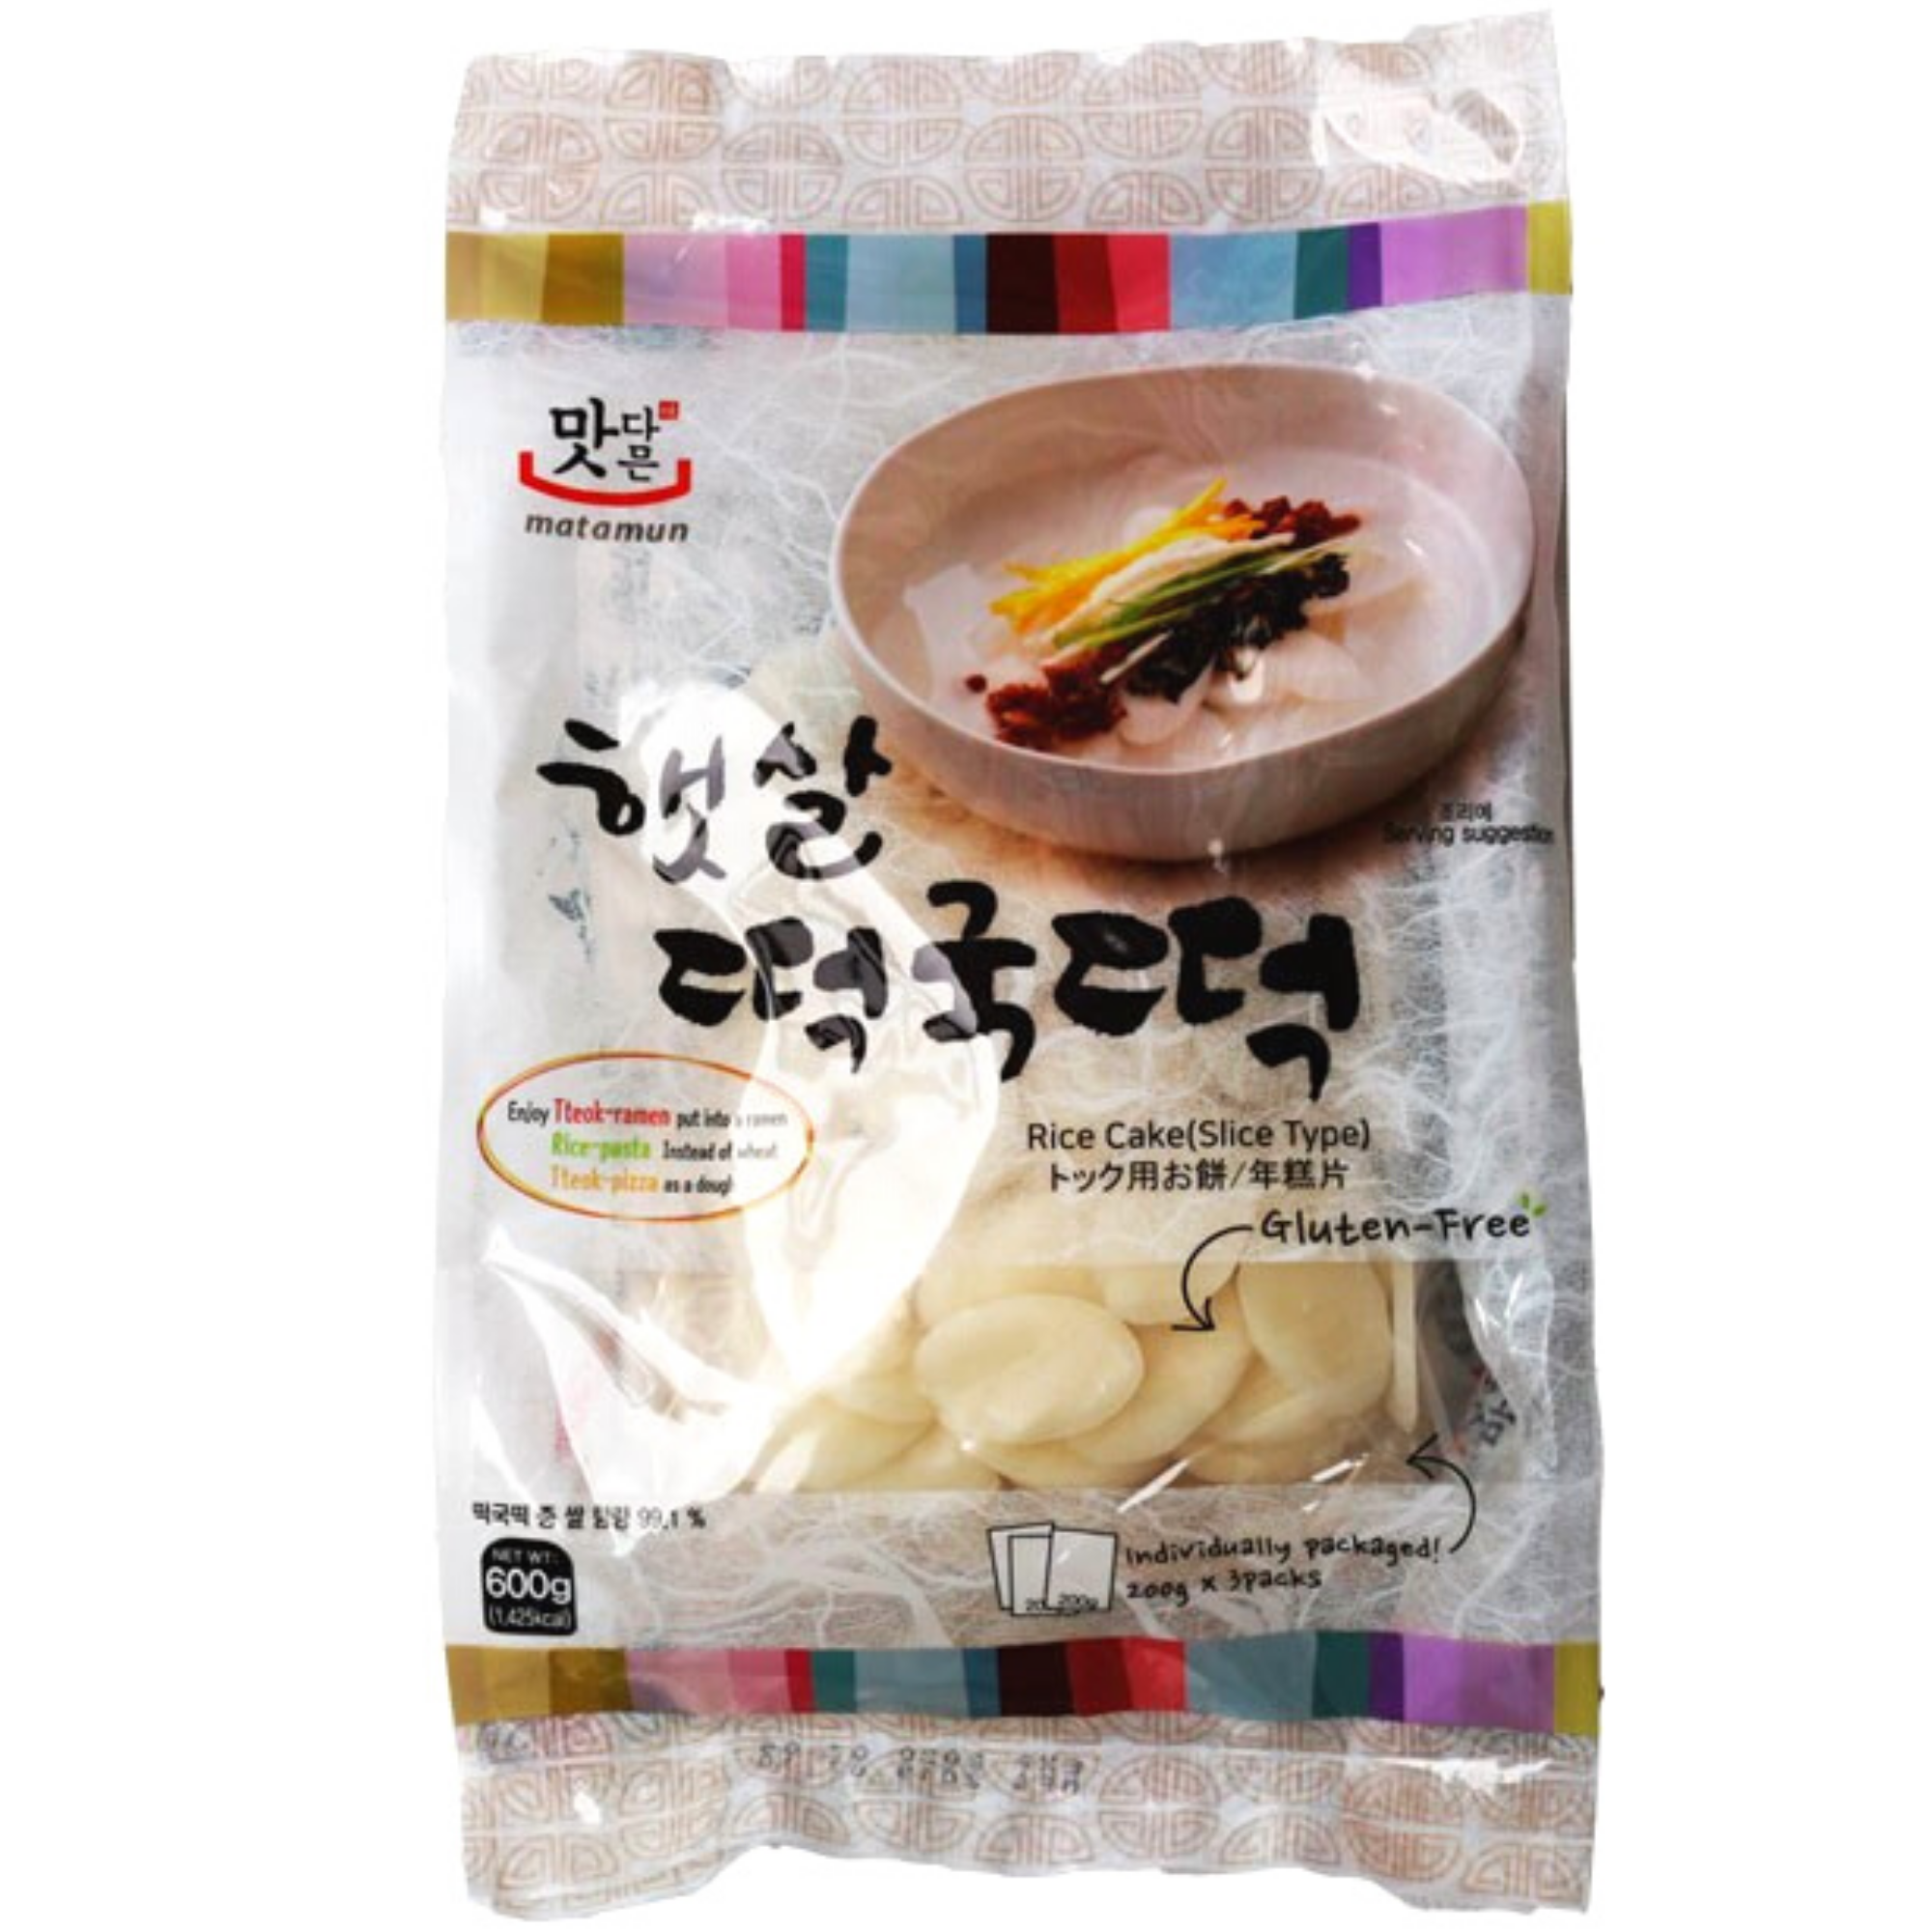 Rice cake siam dan // Noodles siam dan //How to make Myanmar Rice Cake //  Mizo Ei siam dan - YouTube